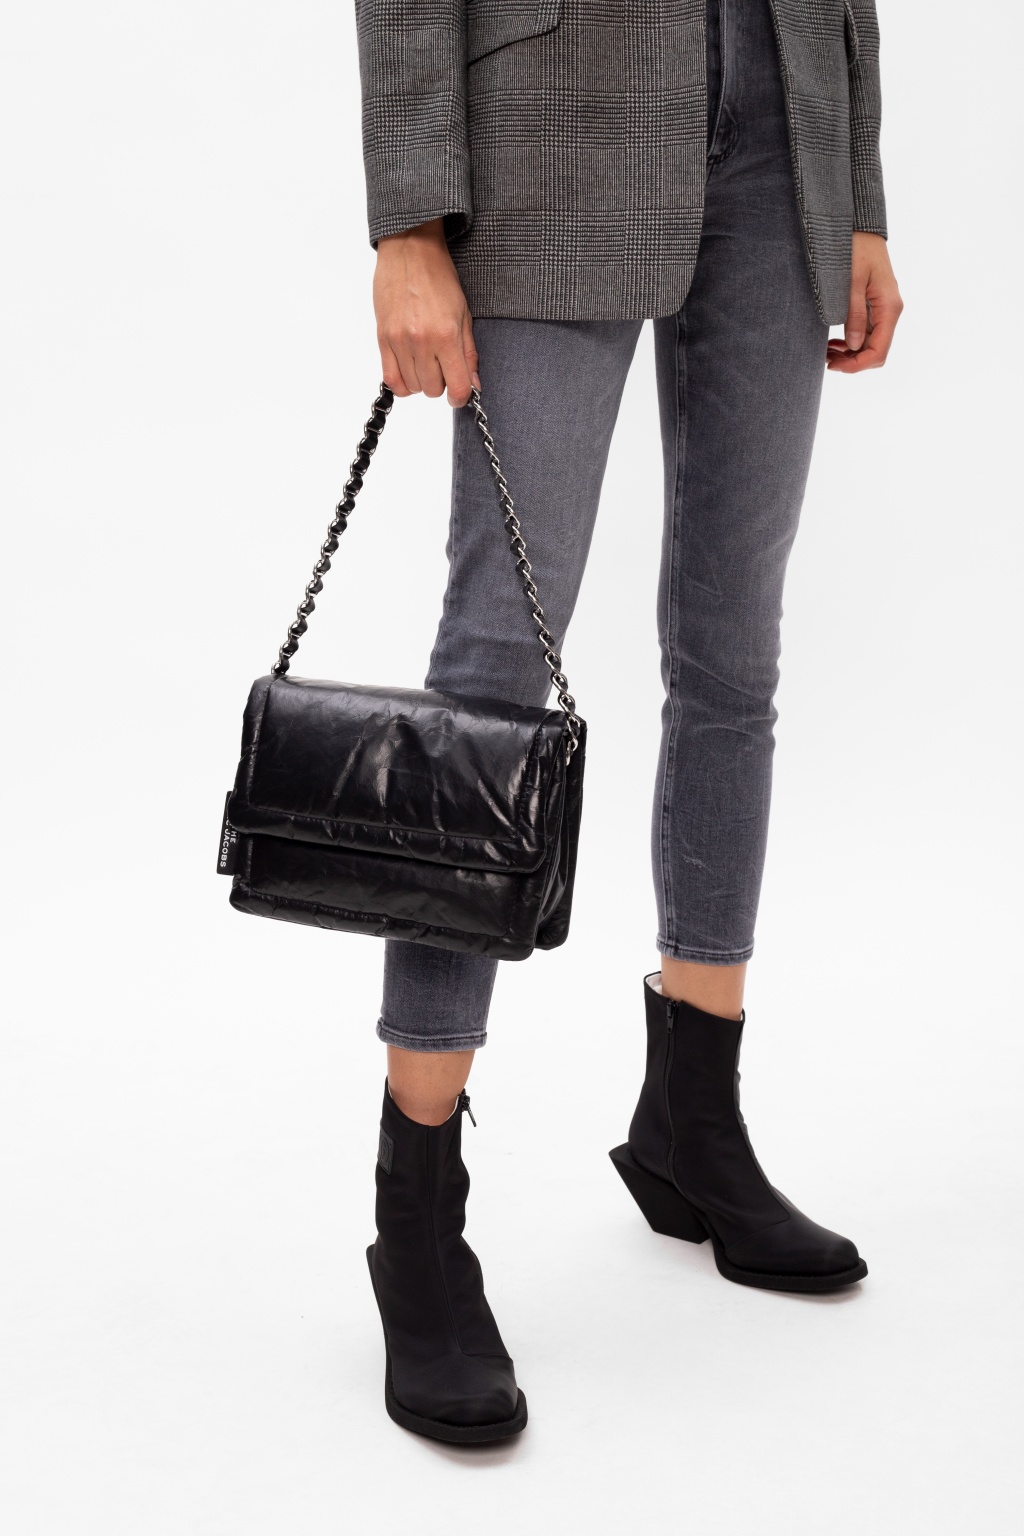 Marc Jacobs 'Pillow' shoulder bag, Women's Bags